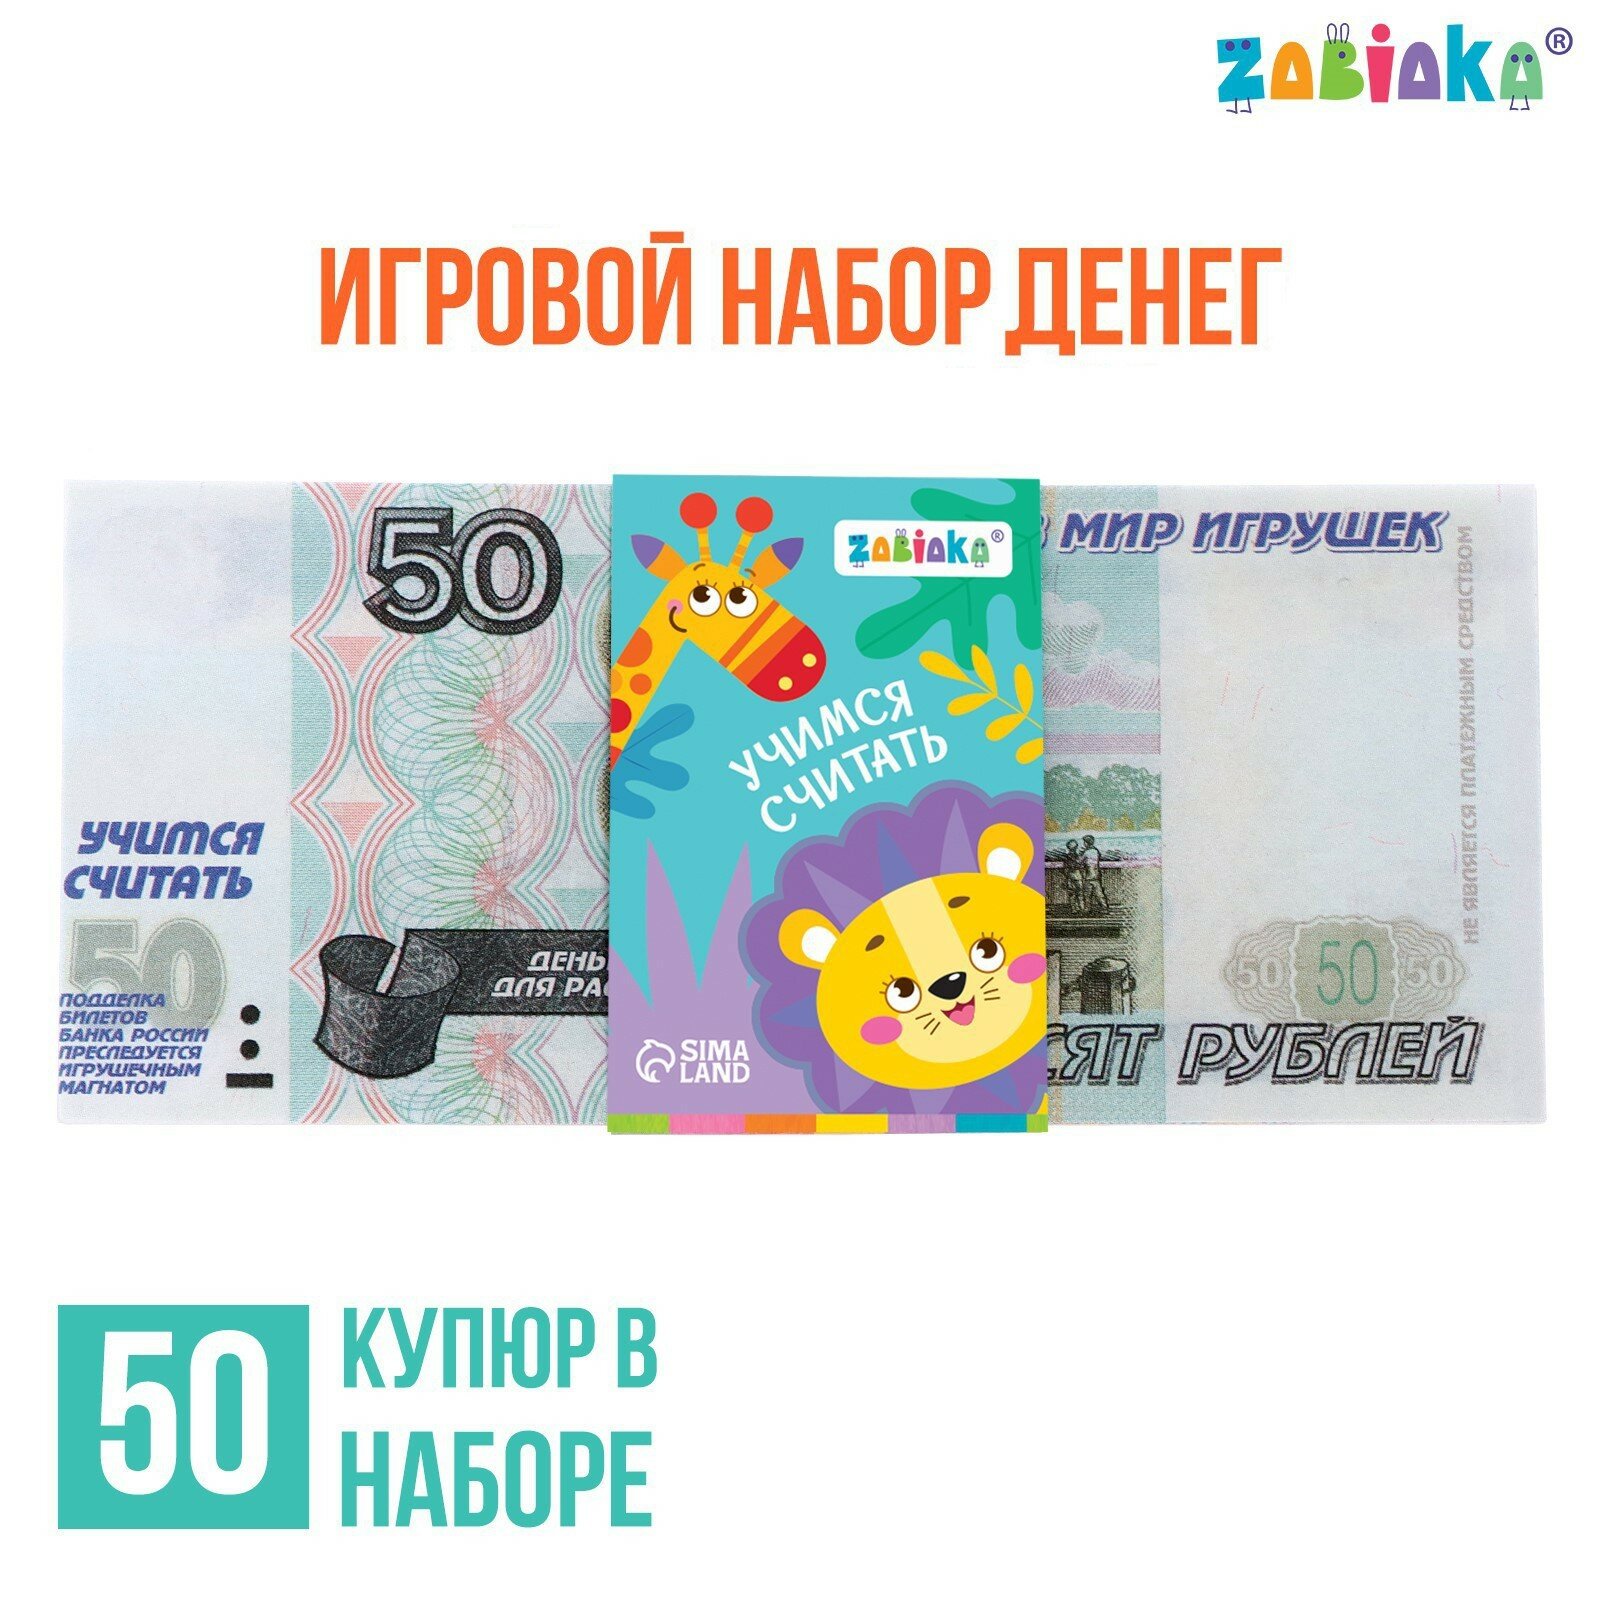 Игровой набор денег «Учимся считать», 50 рублей, 50 купюр (1шт.)